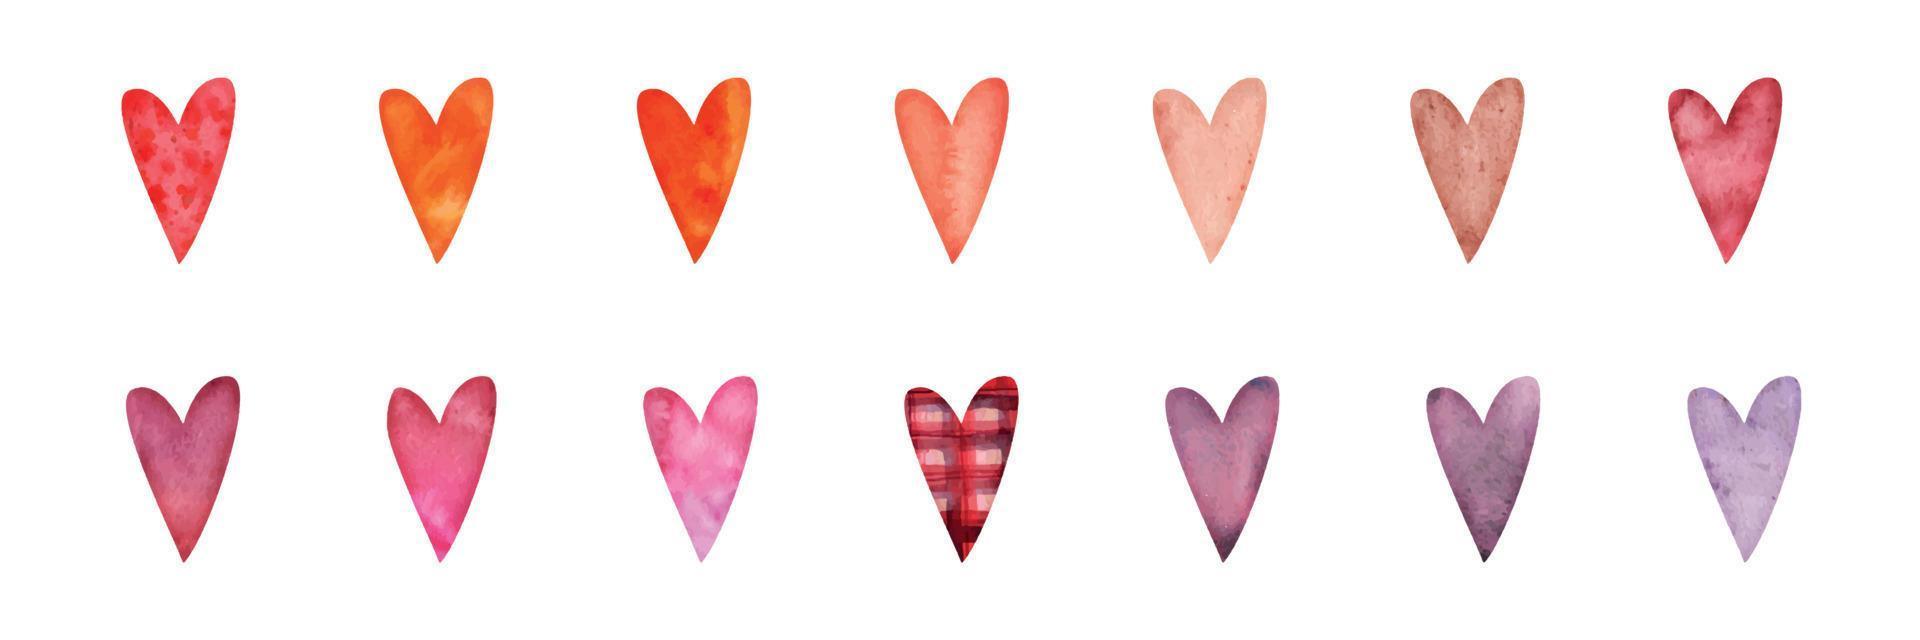 conjunto de objetos dibujados a mano con acuarela, corazones rojos, rosados y morados texturizados para el día de san valentín. aislado sobre fondo blanco. diseño para papel, amor, tarjetas de felicitación, textil, impresión, papel pintado, boda vector